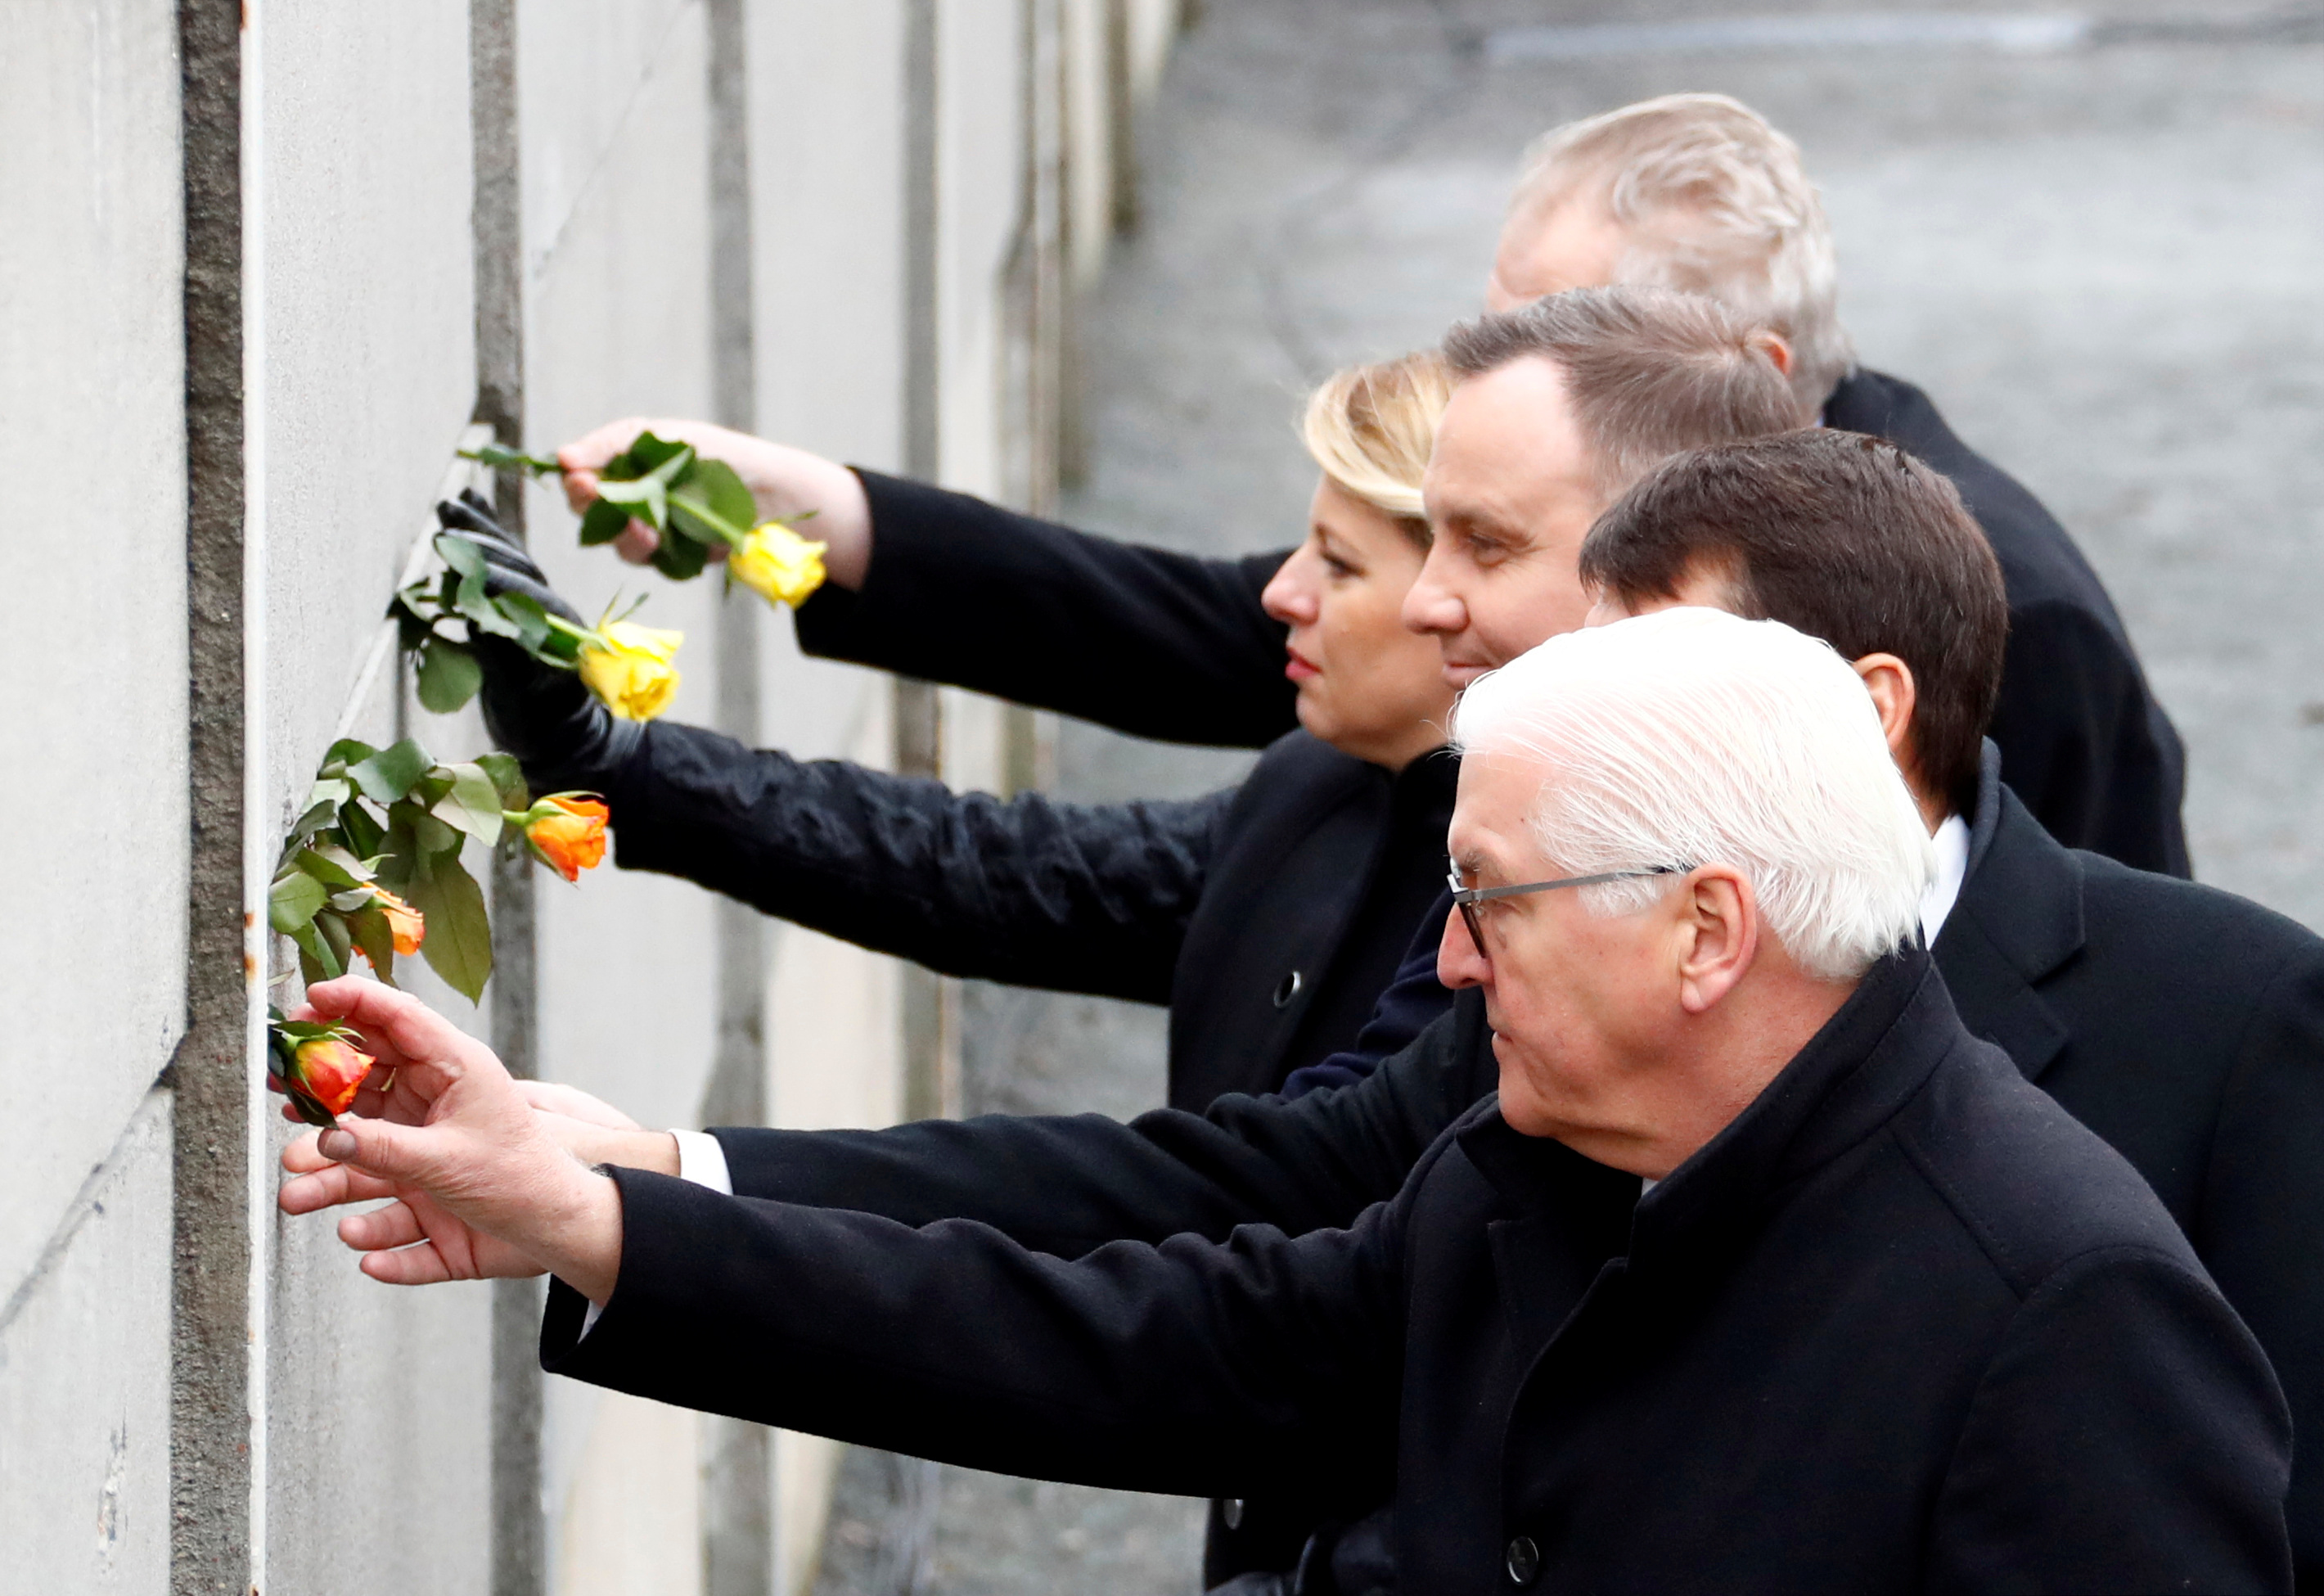 Le président allemand Frank-Walter Steinmeier (en premier plan) a rendu hommage samedi aux pays d'Europe de l'Est qui ont contribué à la chute du mur de Berlin, à l'occasion du 30e anniversaire de cette révolution pacifique. /Photo prise le 9 novembre 2019/REUTERS/Fabrizio Bensch